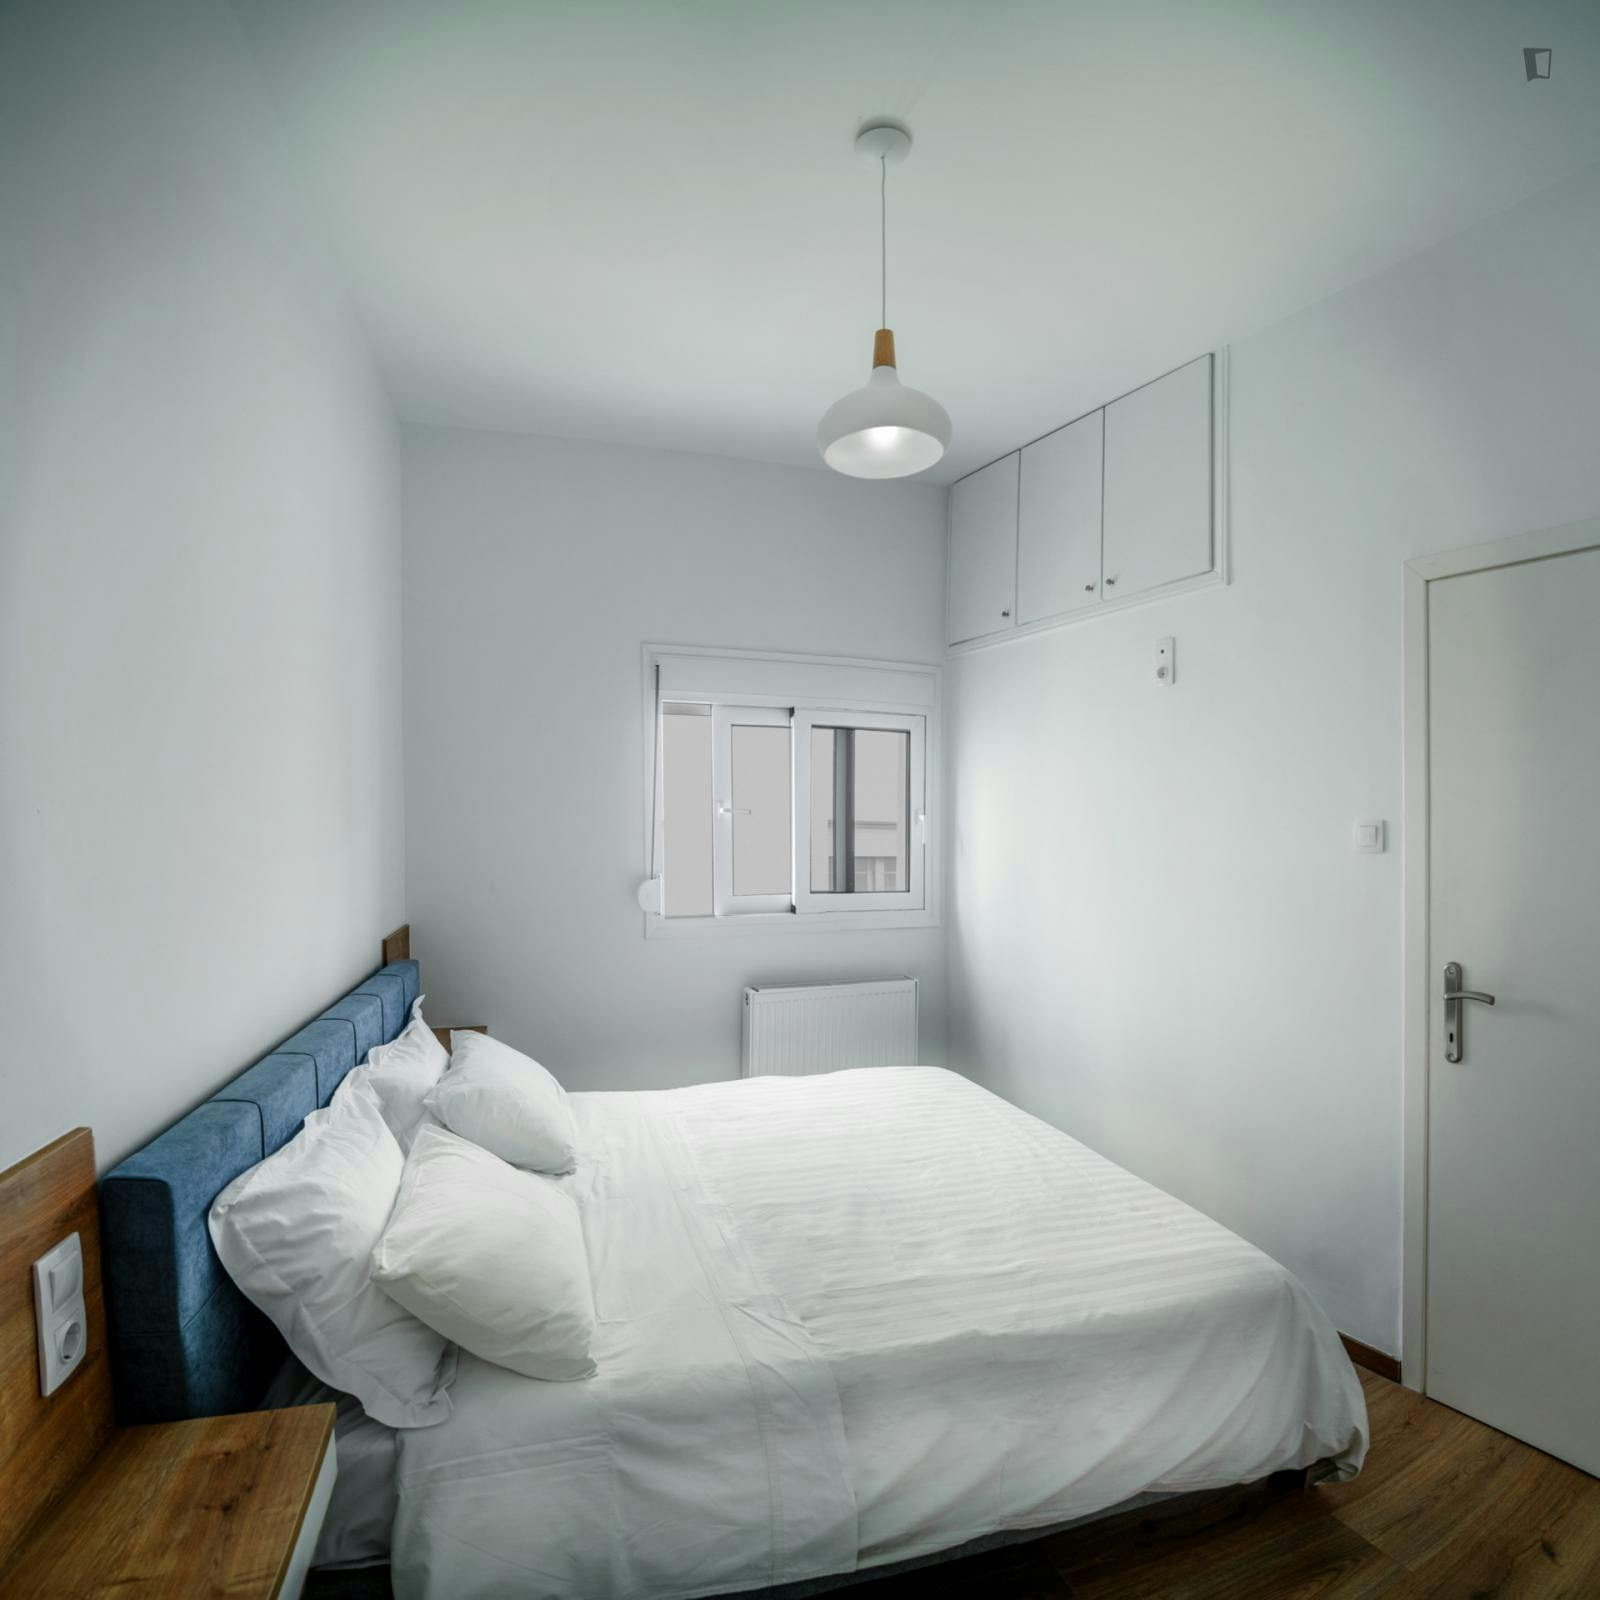 1 bedroom flat Volos city center